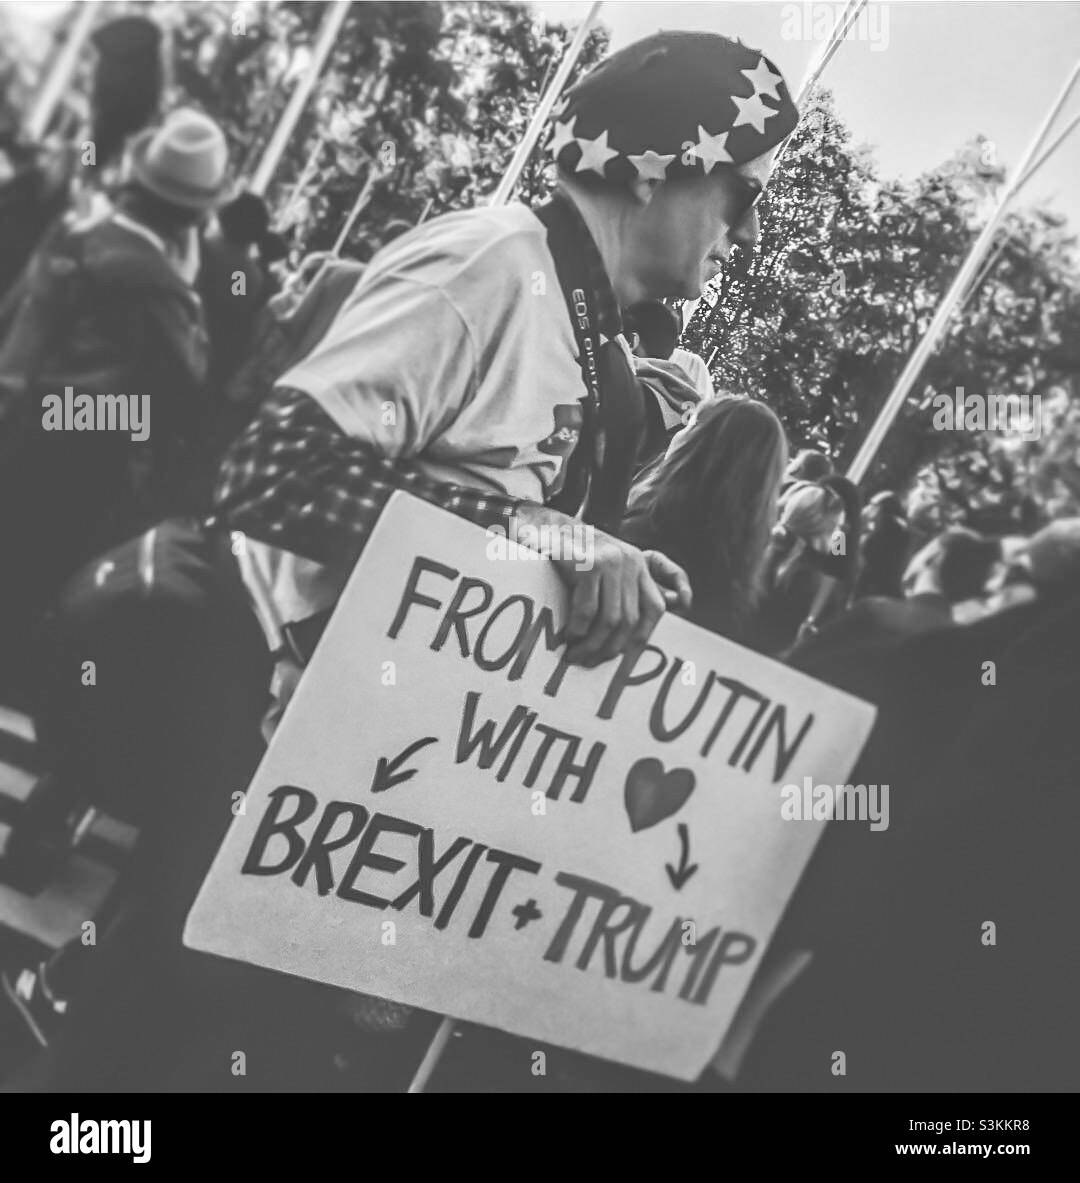 Ein Anti-Brexit-Protestler steht in der Menge und hält ein Zeichen, das den Brexit mit Putin & Trump verbindet - Okt 2018 Stockfoto